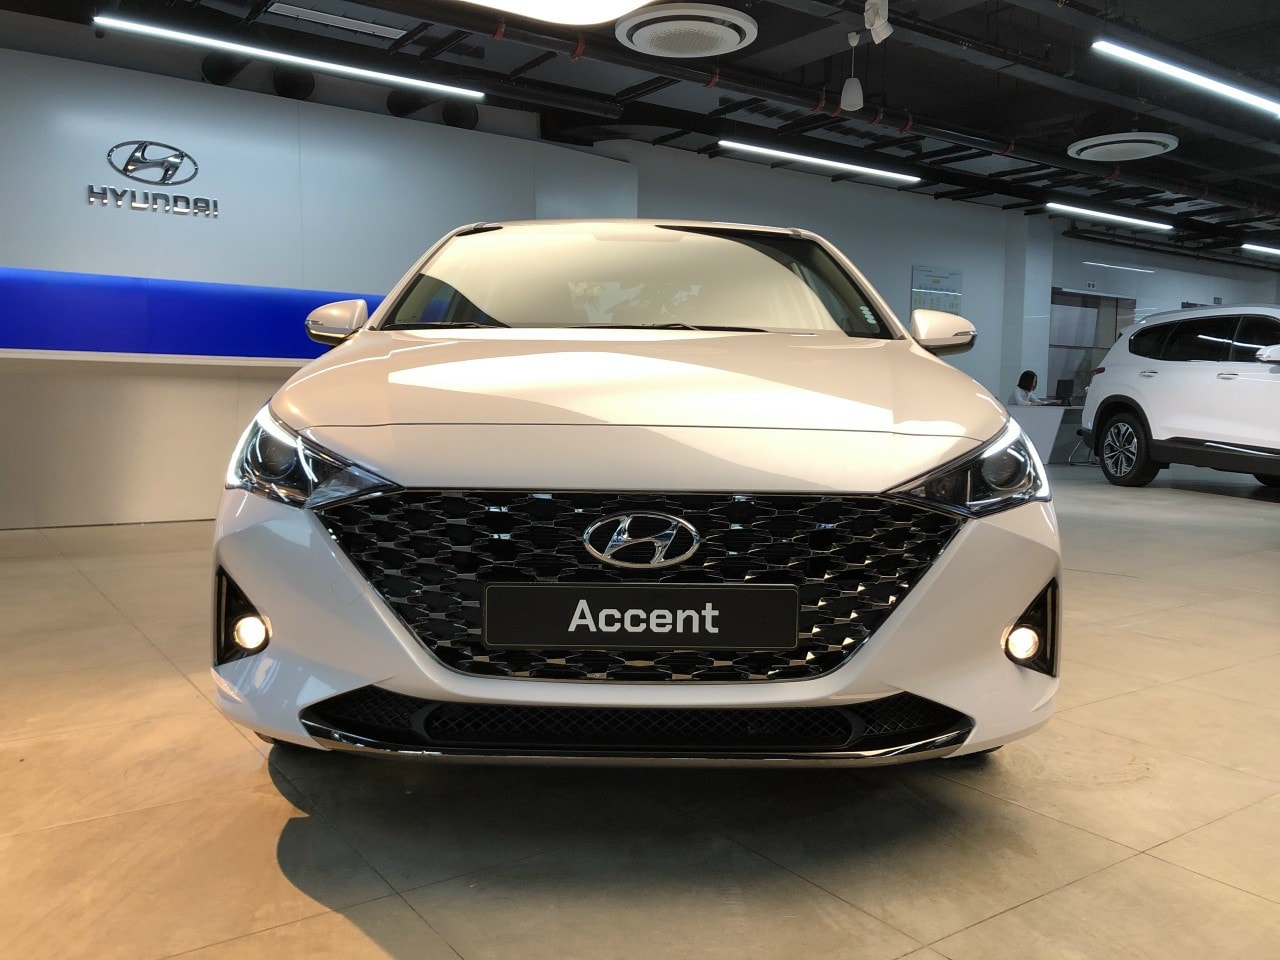 Hyundai Accent 2021 lộ diện hoàn toàn tại Việt Nam: Thiết kế điệu, màn hình lớn, điều khiển bằng điện thoại, kịp chạy ưu đãi trước bạ hàng chục triệu đồng - Ảnh 6.